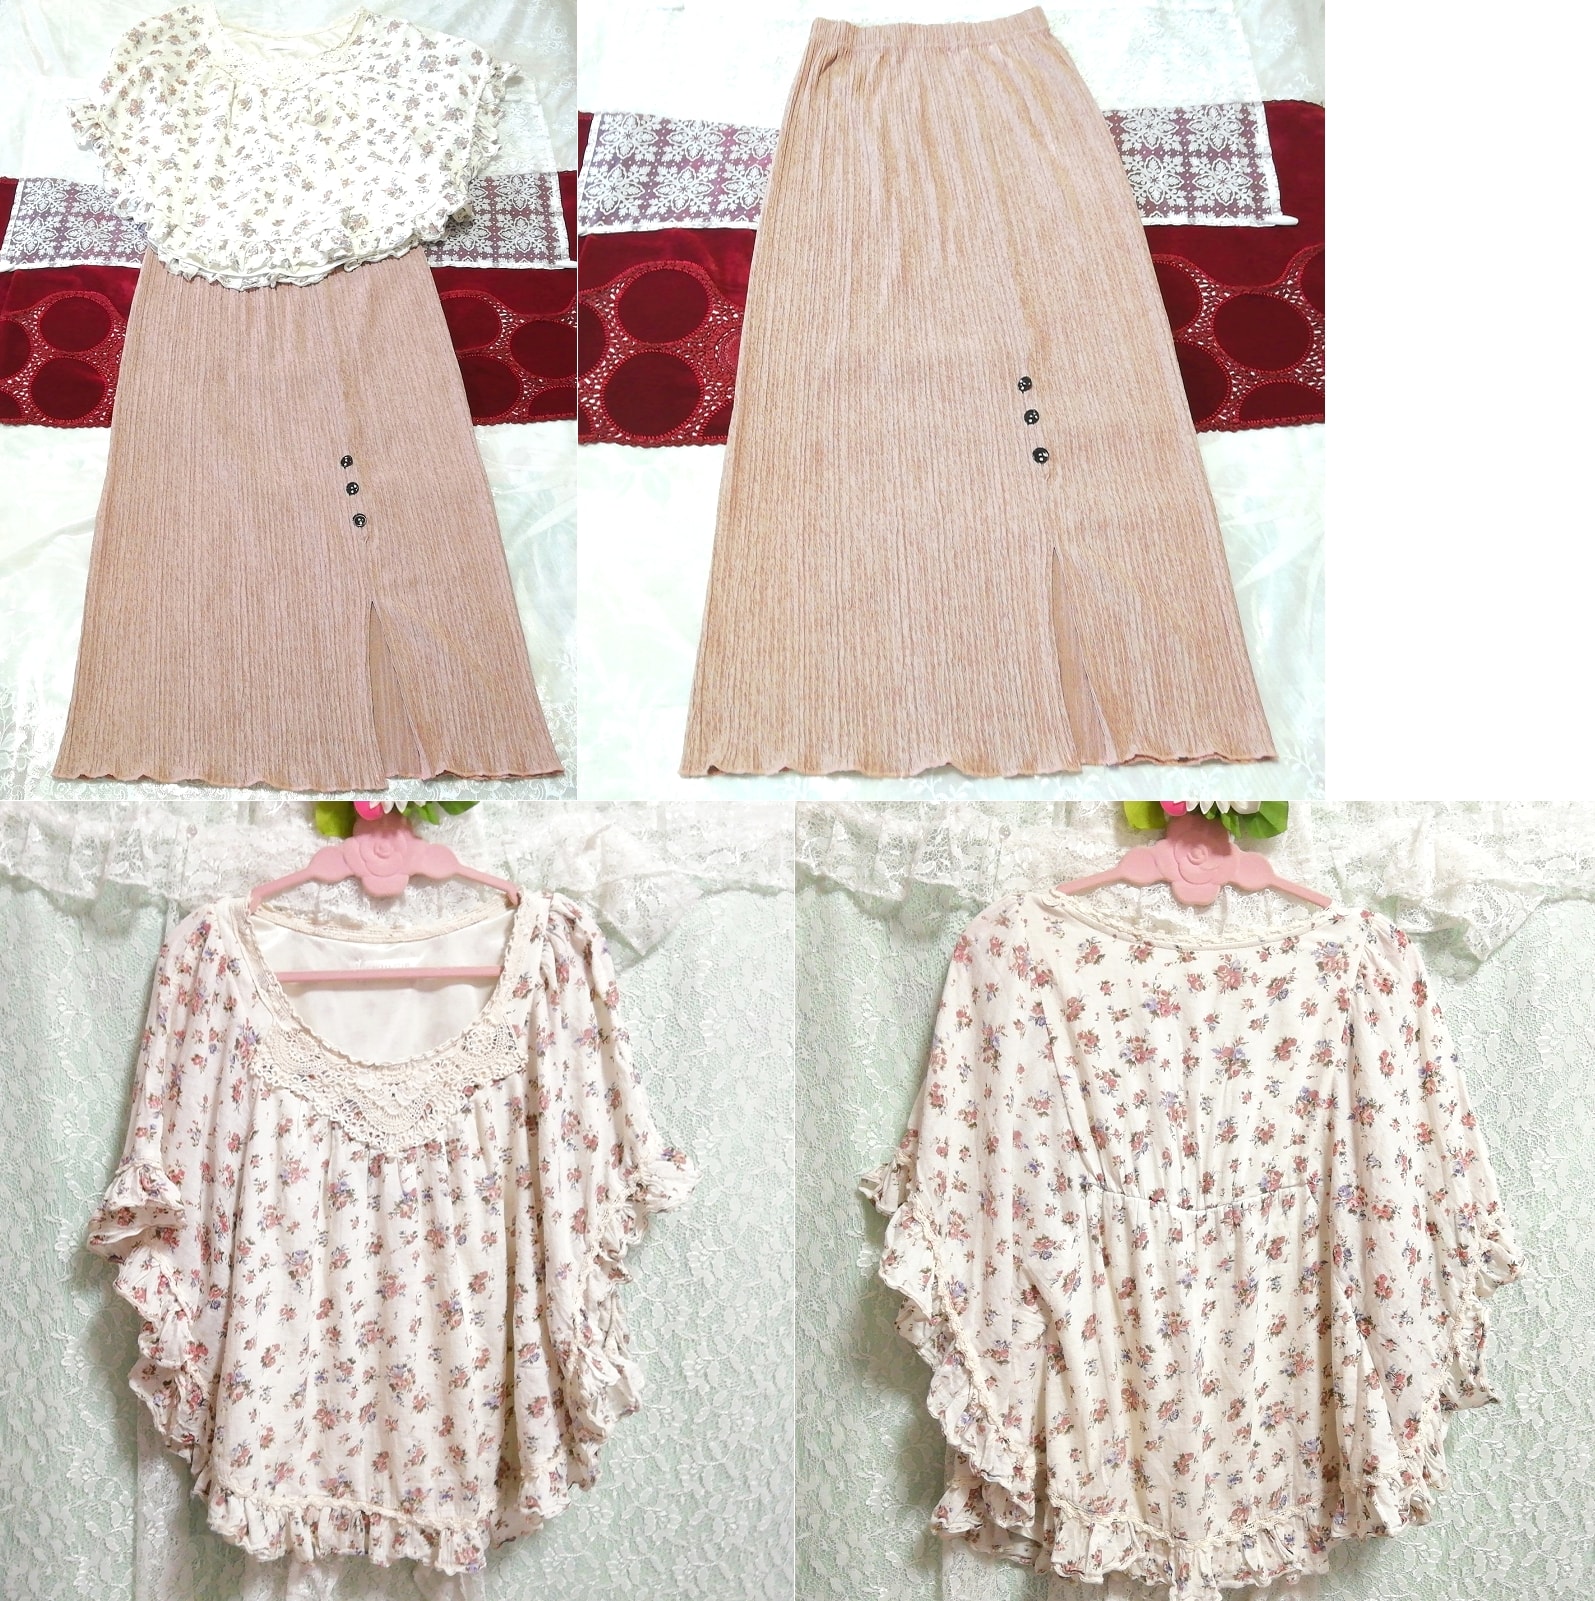 Poncho-Tunika-Negligé-Nachthemd aus weißer Baumwolle mit Blumenmuster, rosa-beiger Maxirock, 2 Stück, Mode, Frauenmode, Nachtwäsche, Pyjama